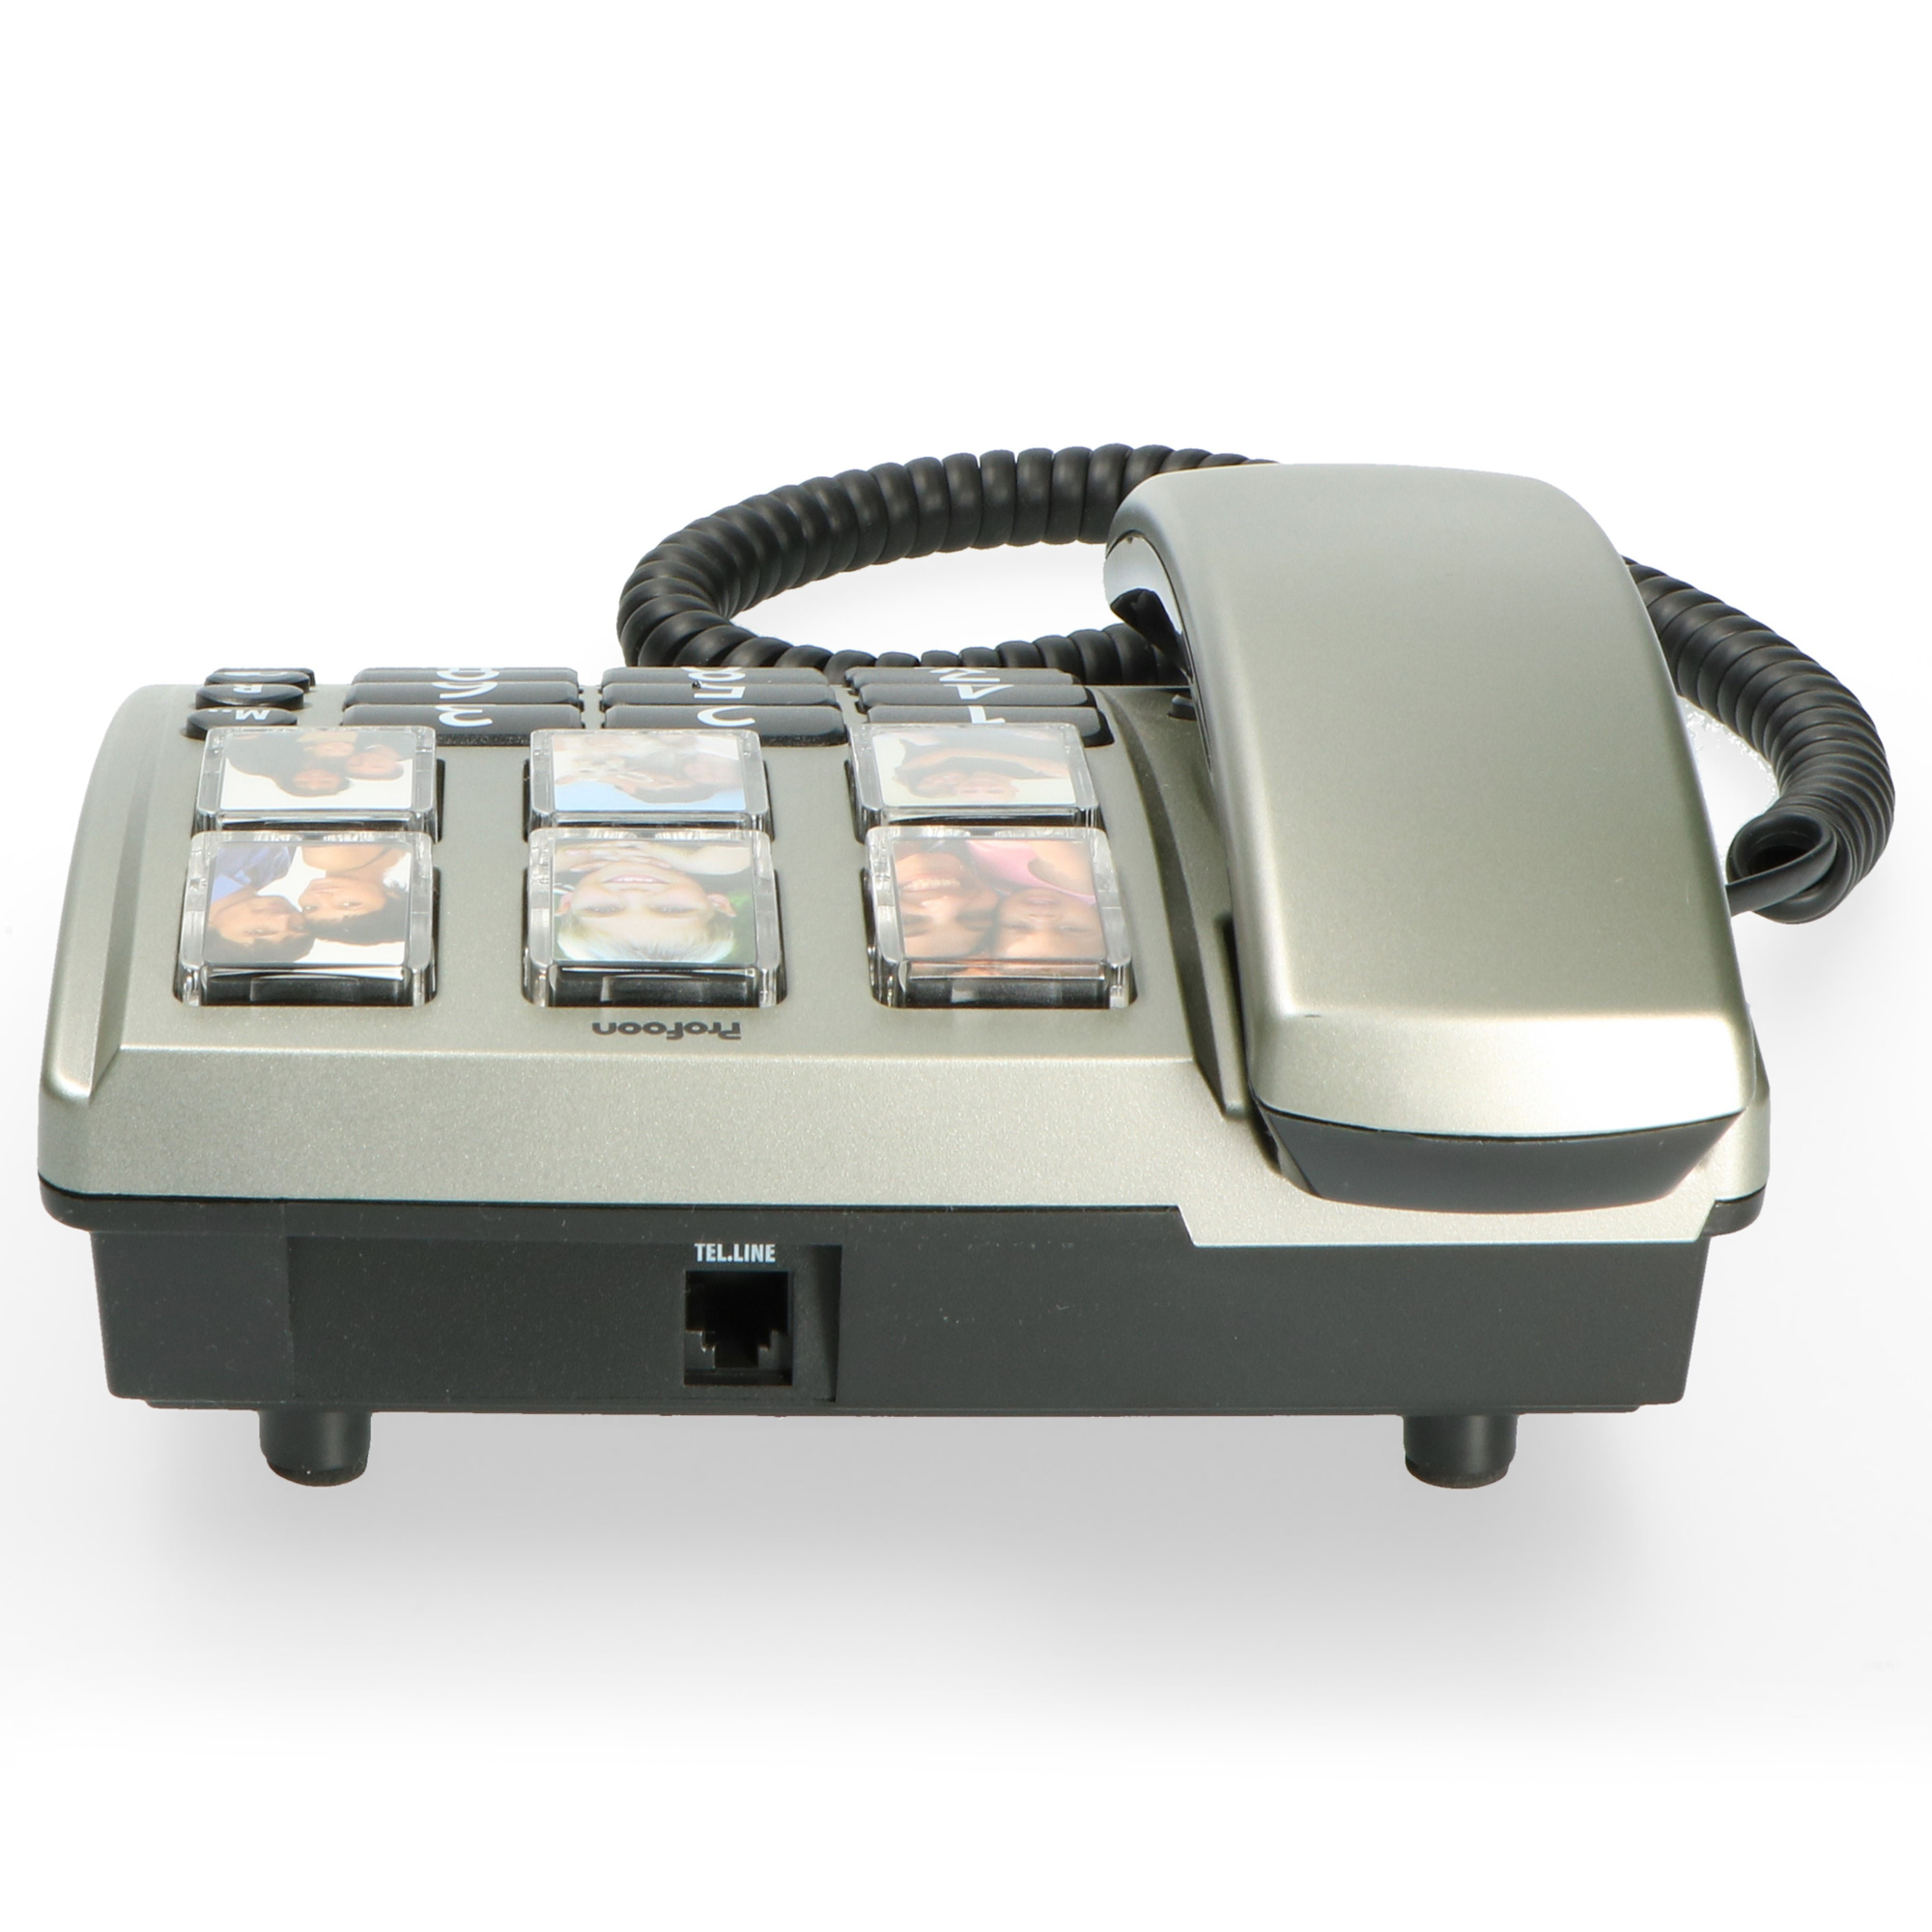 Tischtelefon Zahlentasten großen - Bürotelefon schnurgebunden TX-560 Fototasten mit und PROFOON großen -